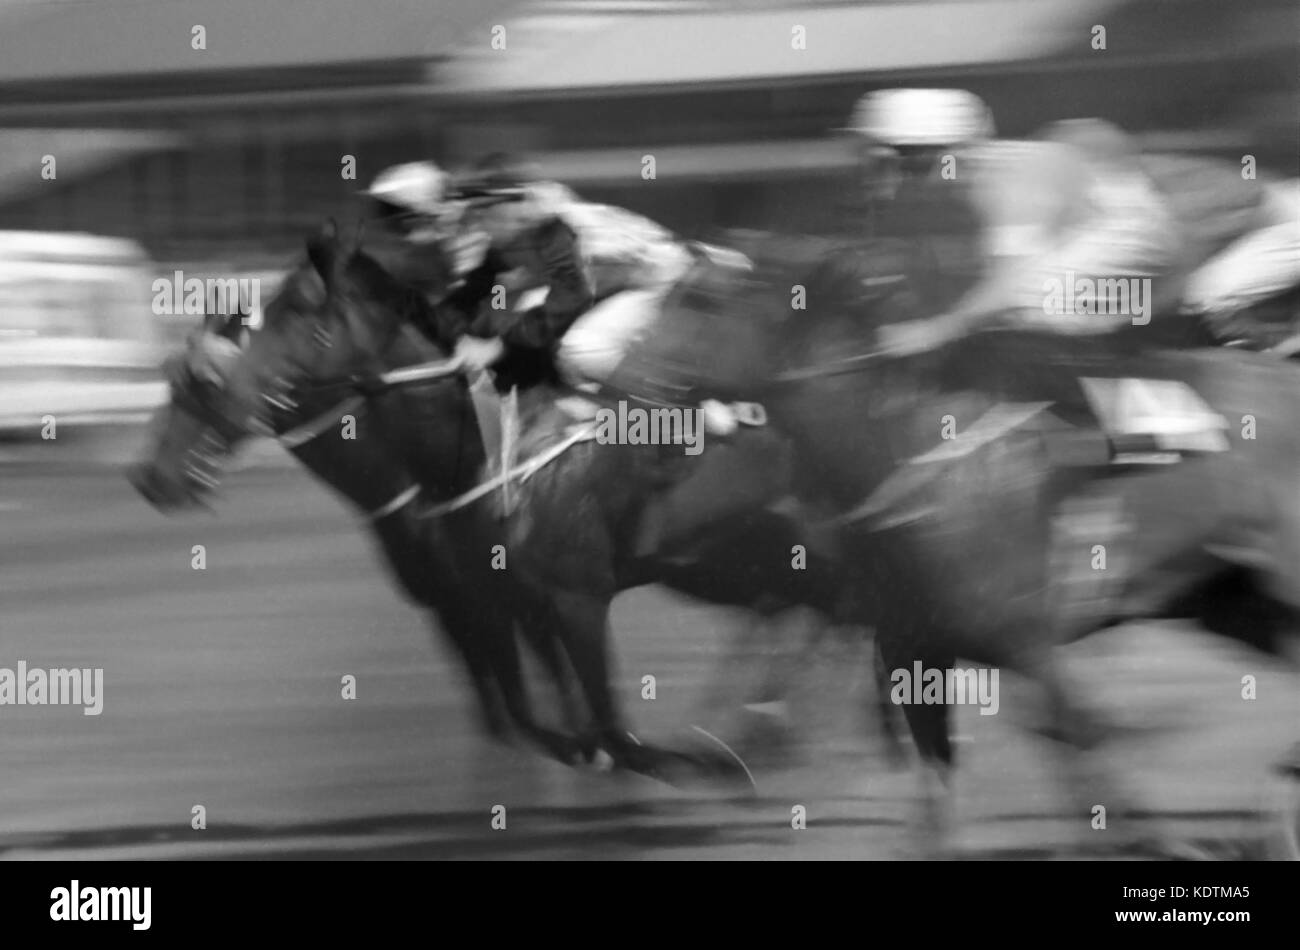 L'eccitazione della corsa come vye offuscato cavalli e scimini per la posizione: Newcastle Racecourse, Broadmeadow, nuovo Galles del Sud, Australia. Versione B/W. Foto Stock